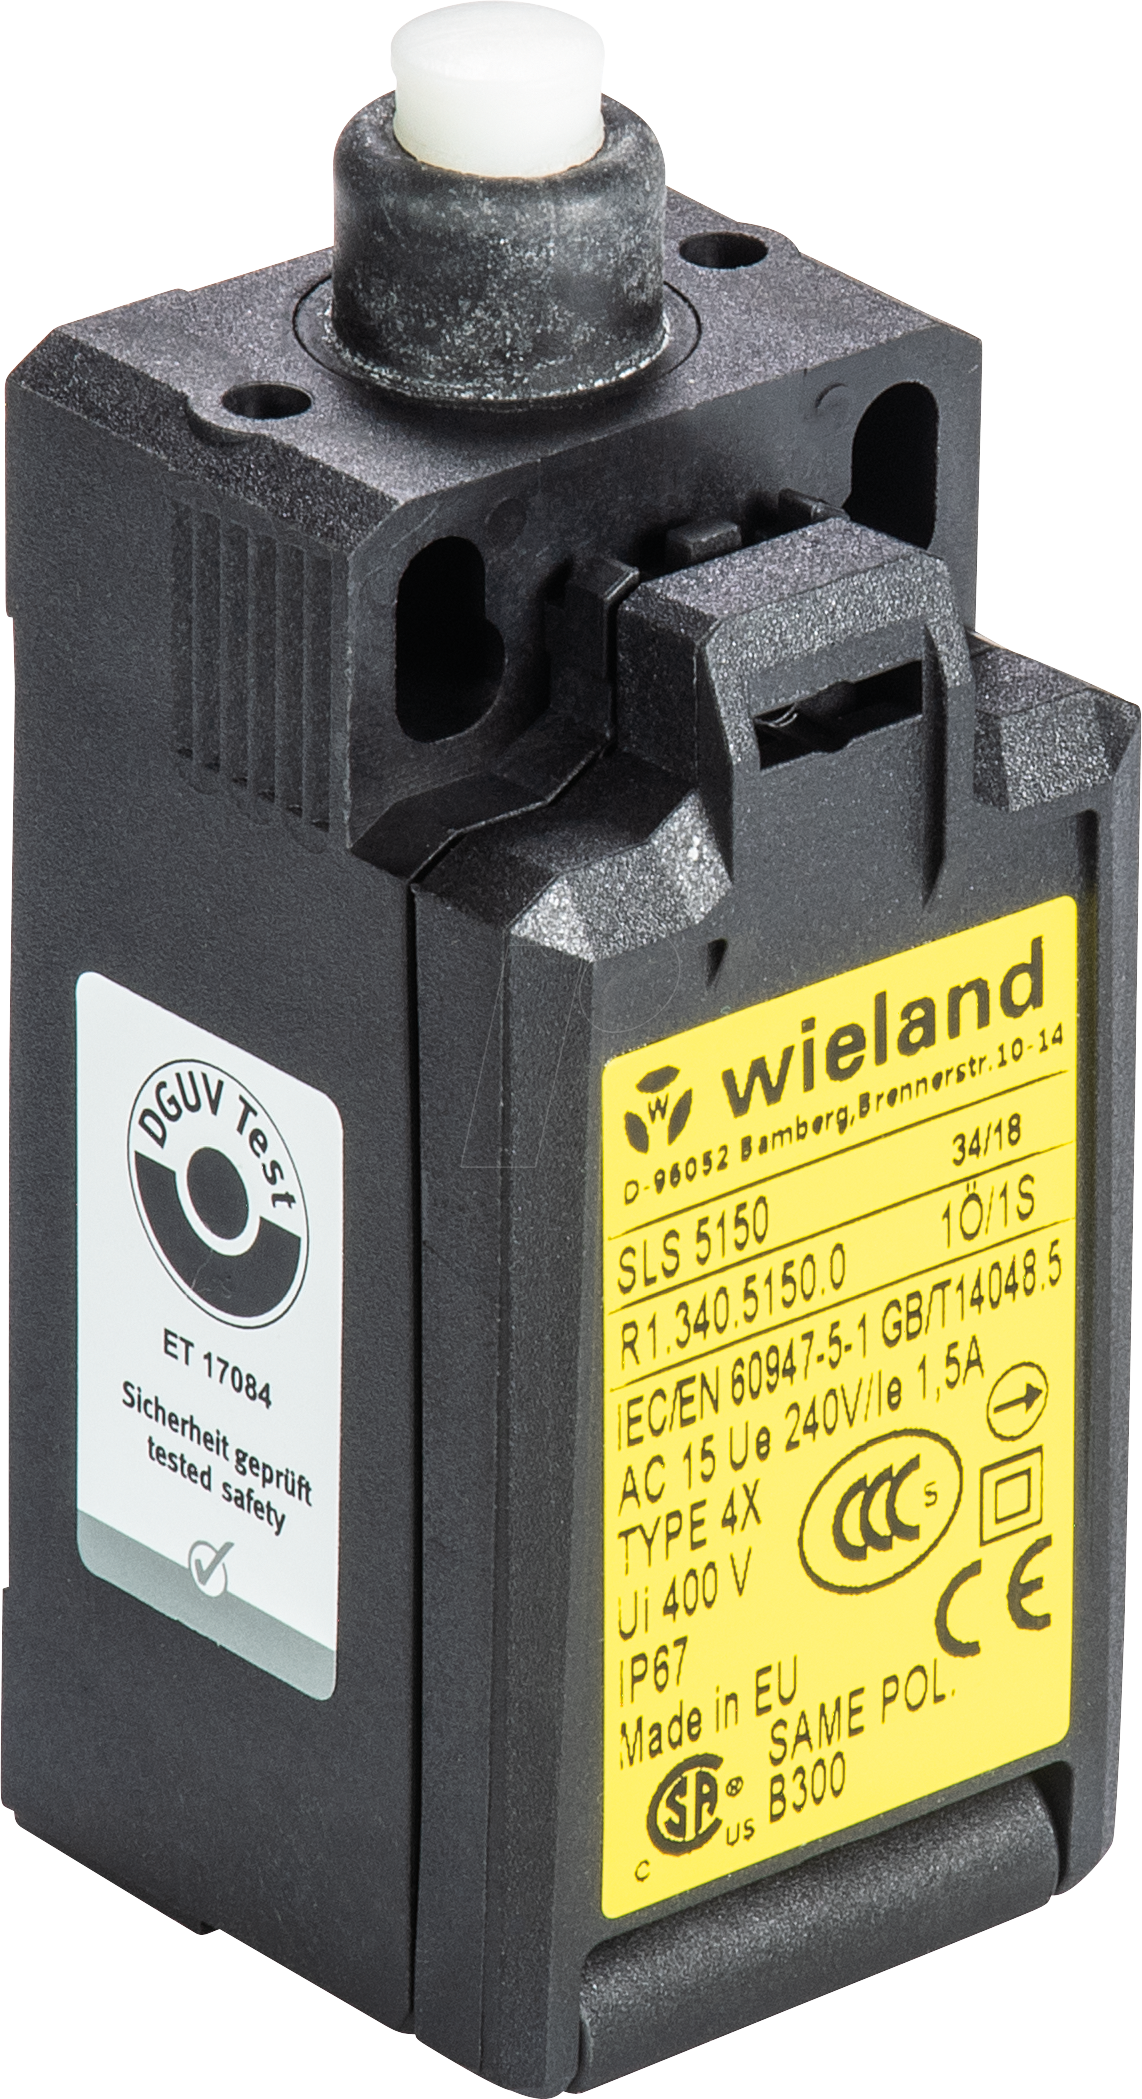 SLS 5130 - Sicherheitsschalter SLS 5130, 2 NC von Wieland